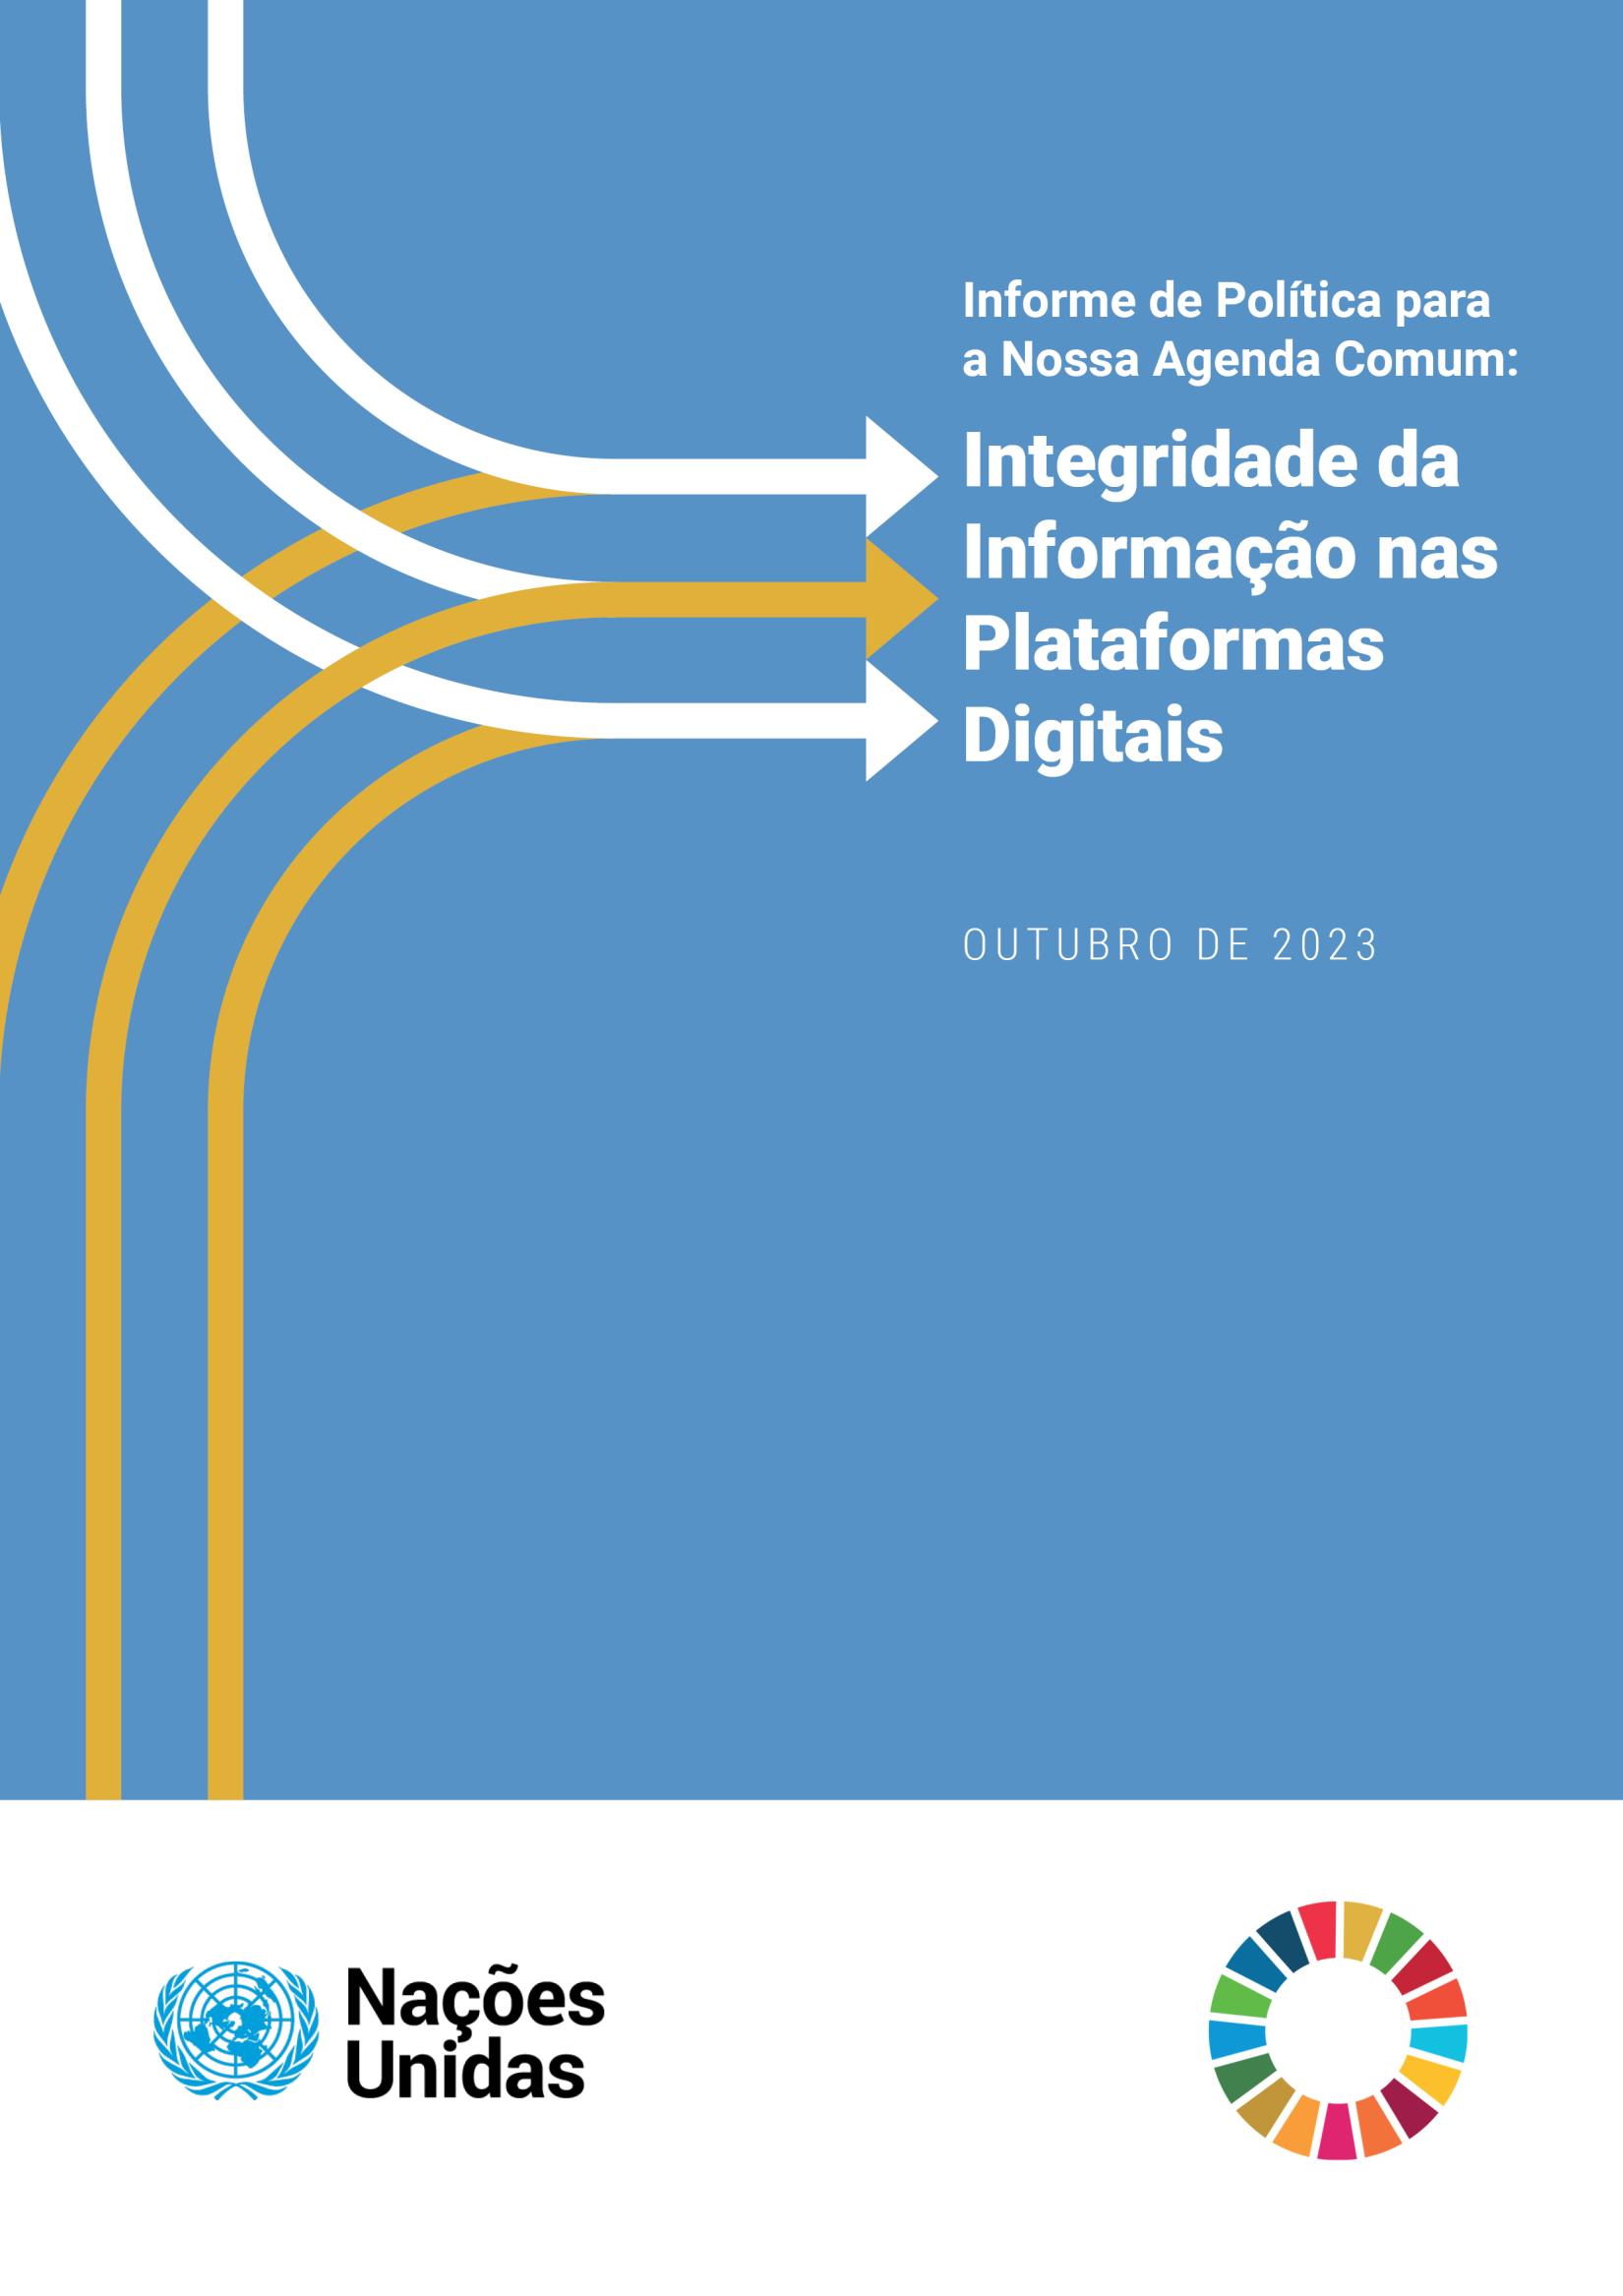 Informe de Política sobre Integridade da Informação nas Plataformas Digitais